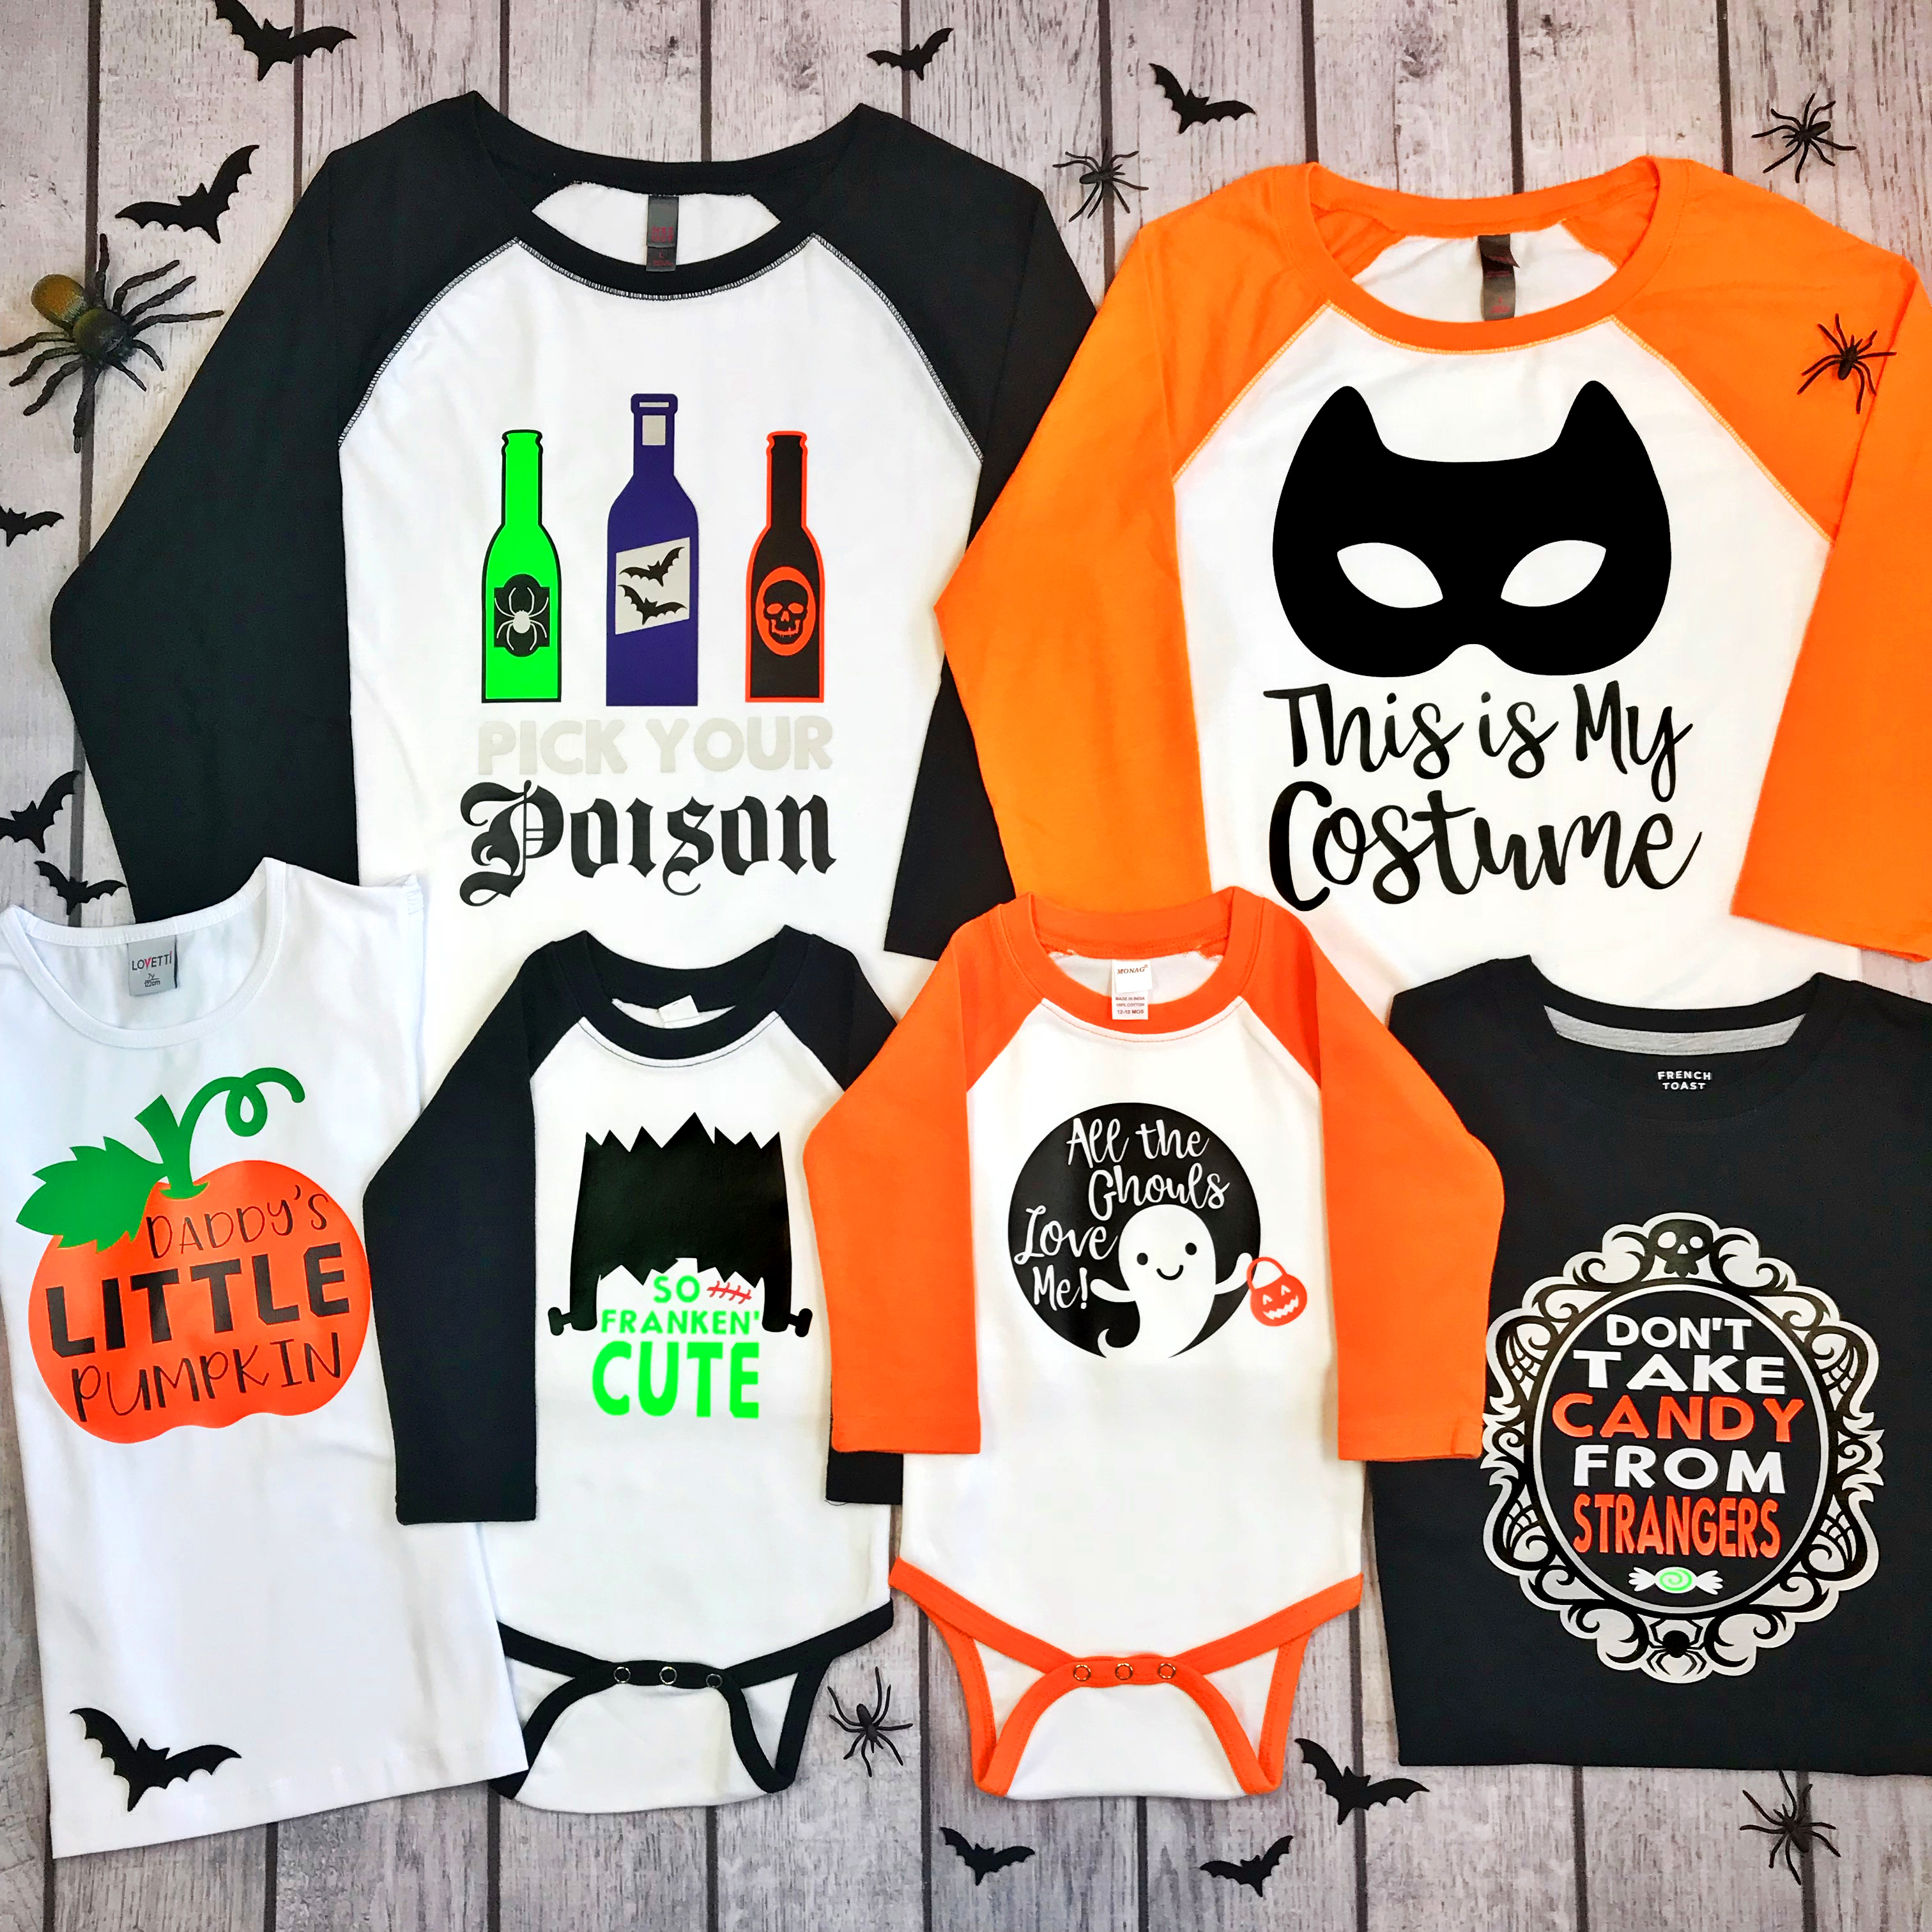 Halloween pumpkin mandala T shirt design